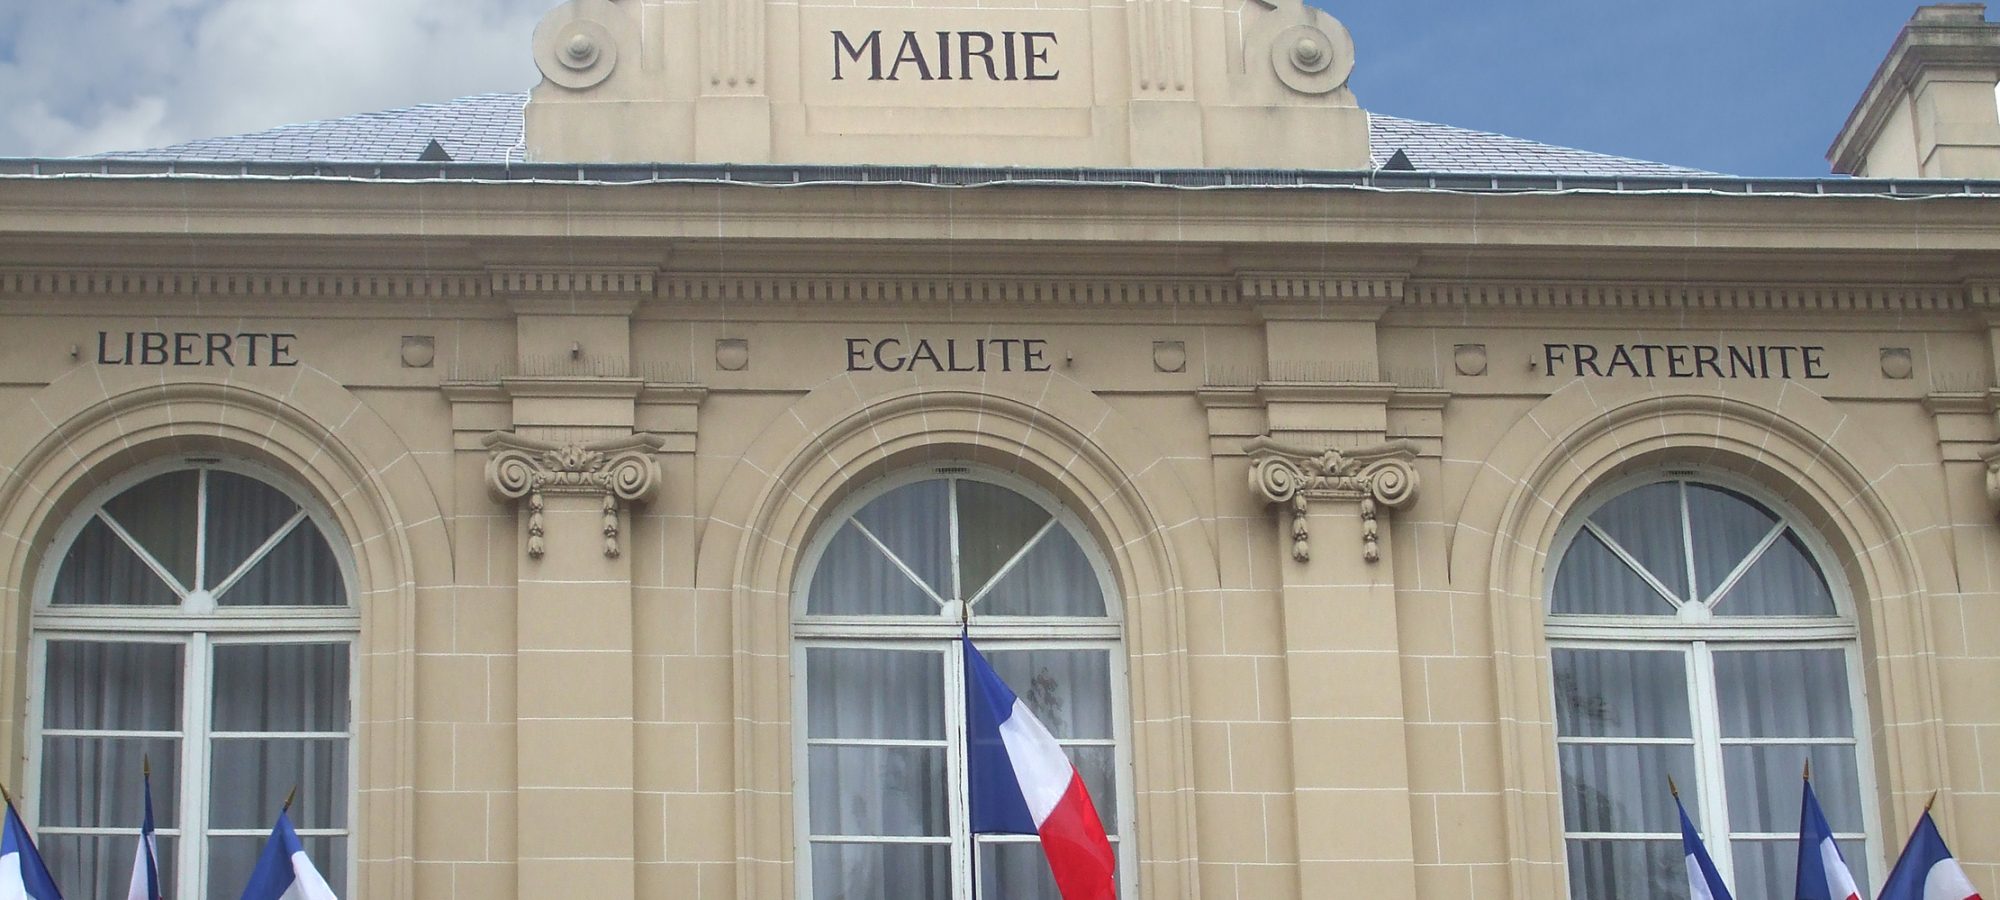 mairie française